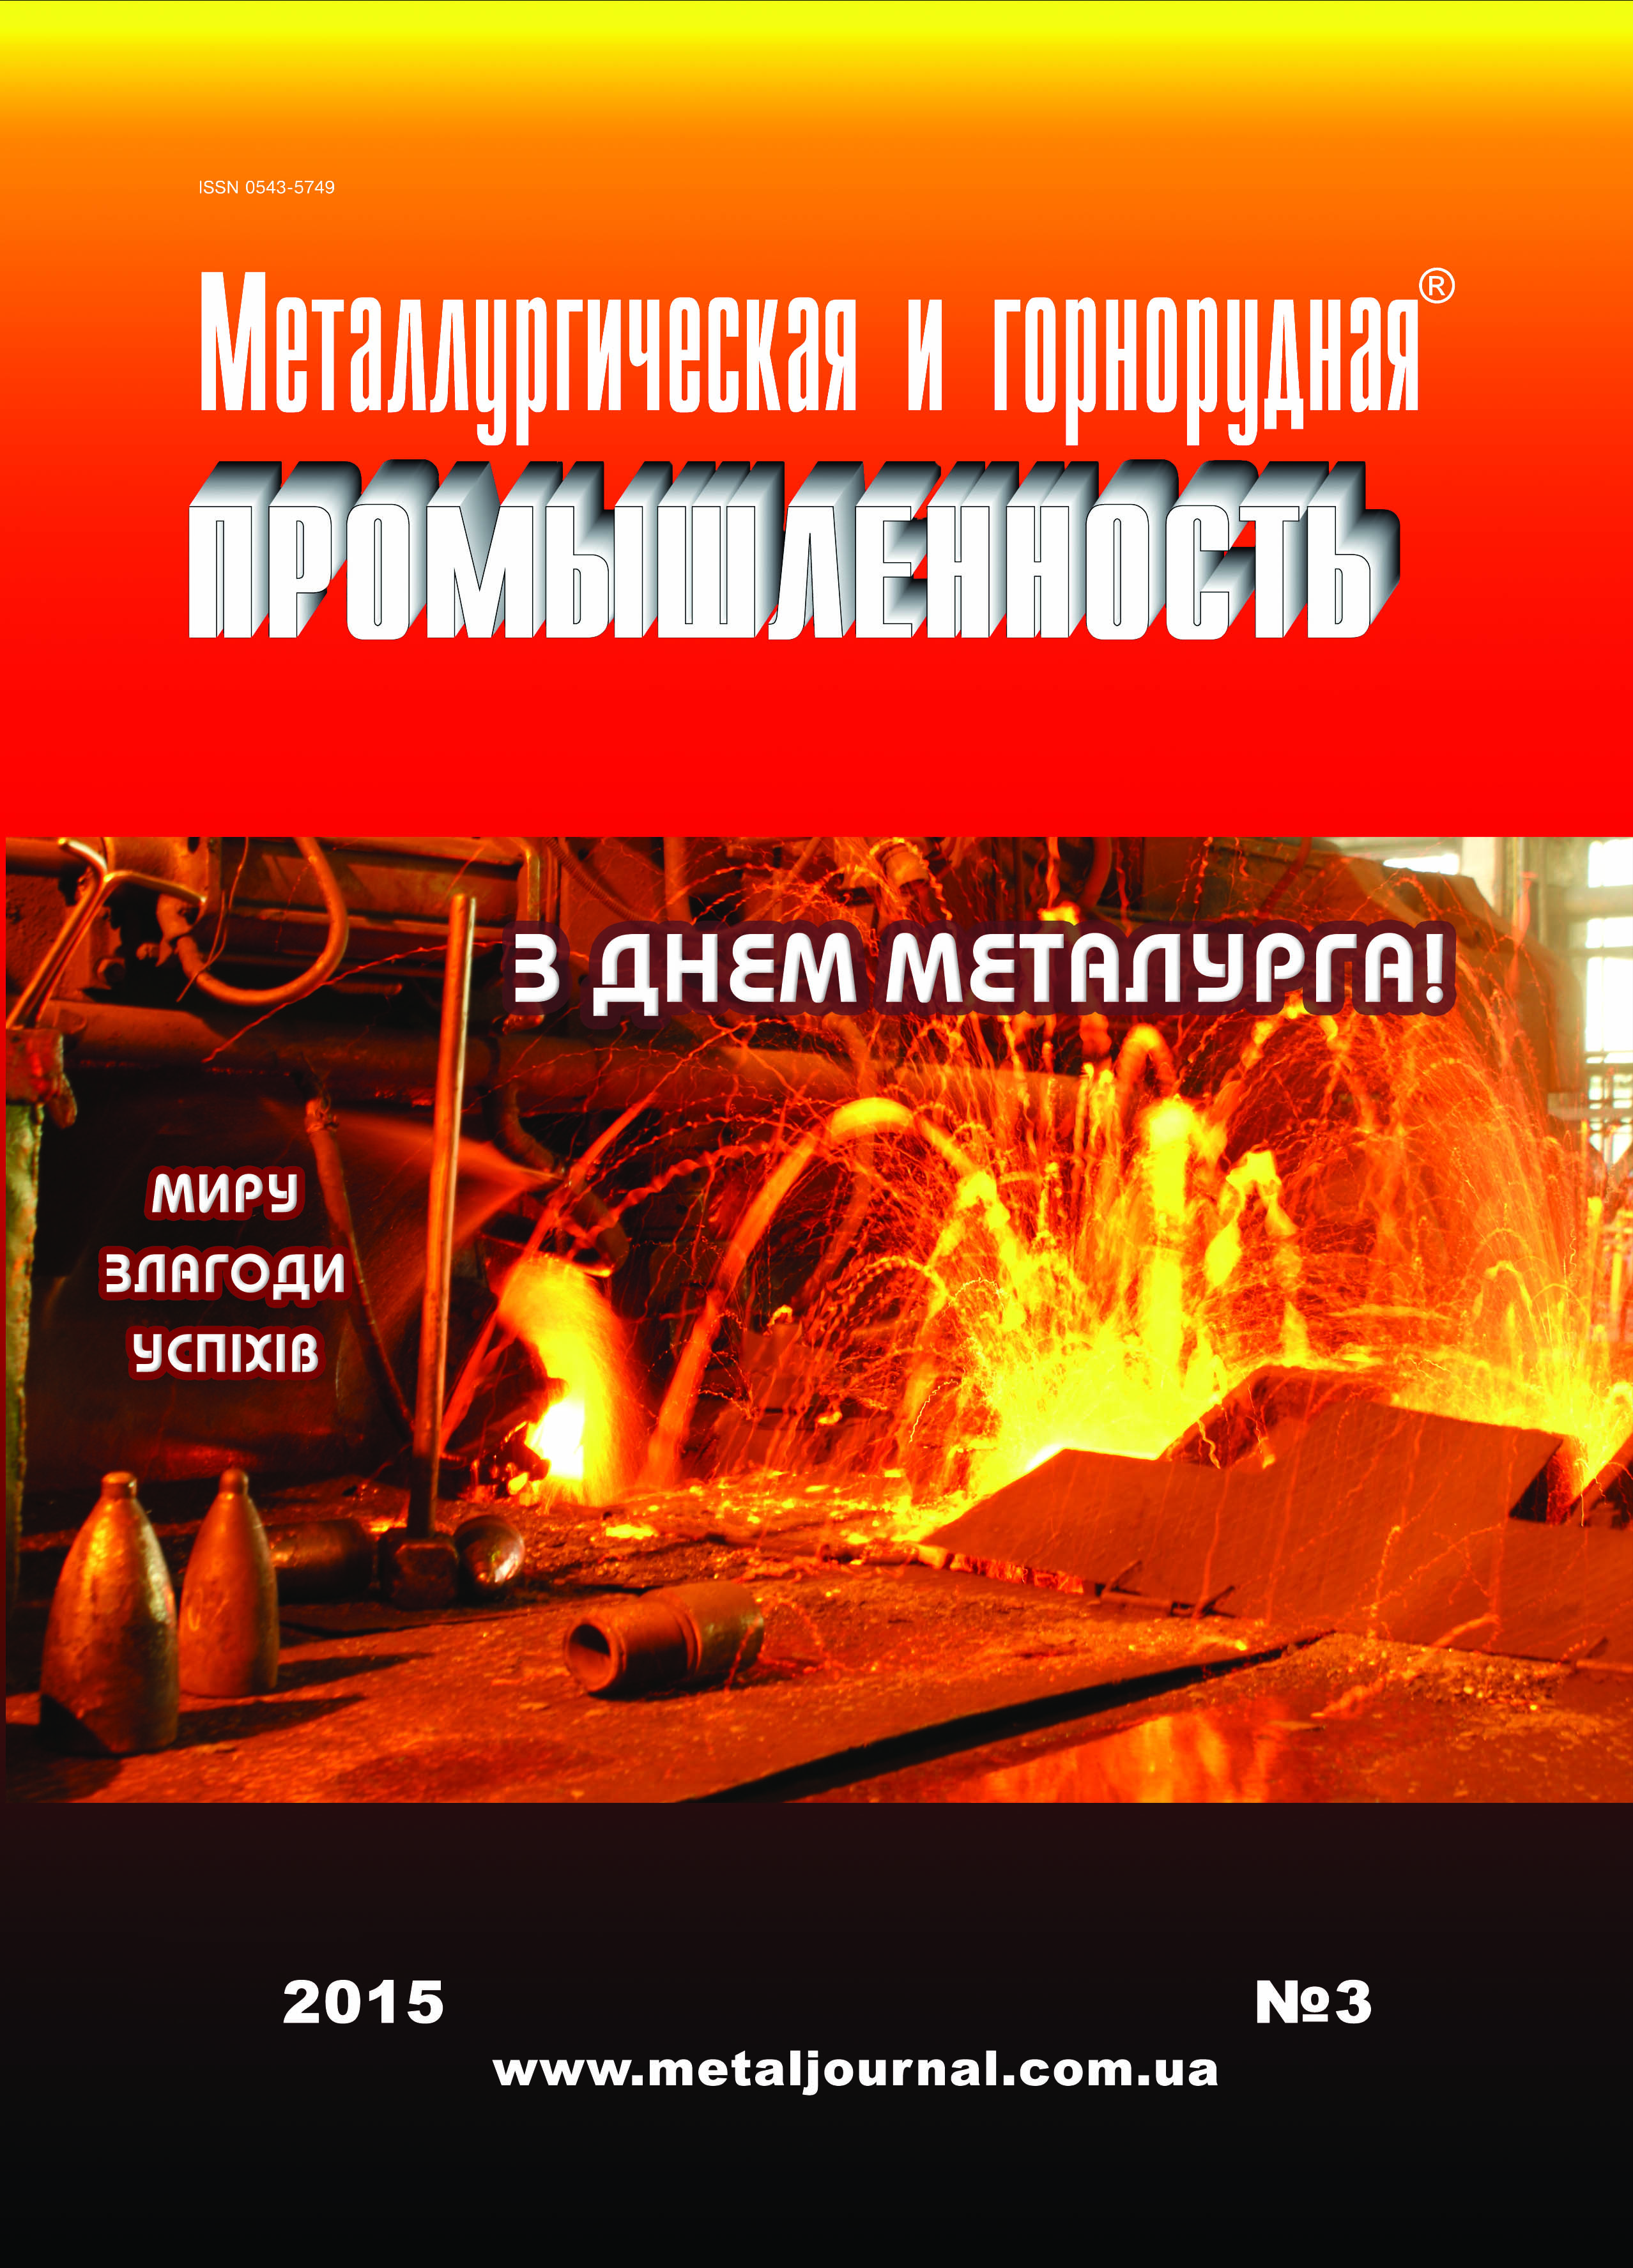 Металлургическая и горнорудная промышленность №3 (294) 2015 г. image